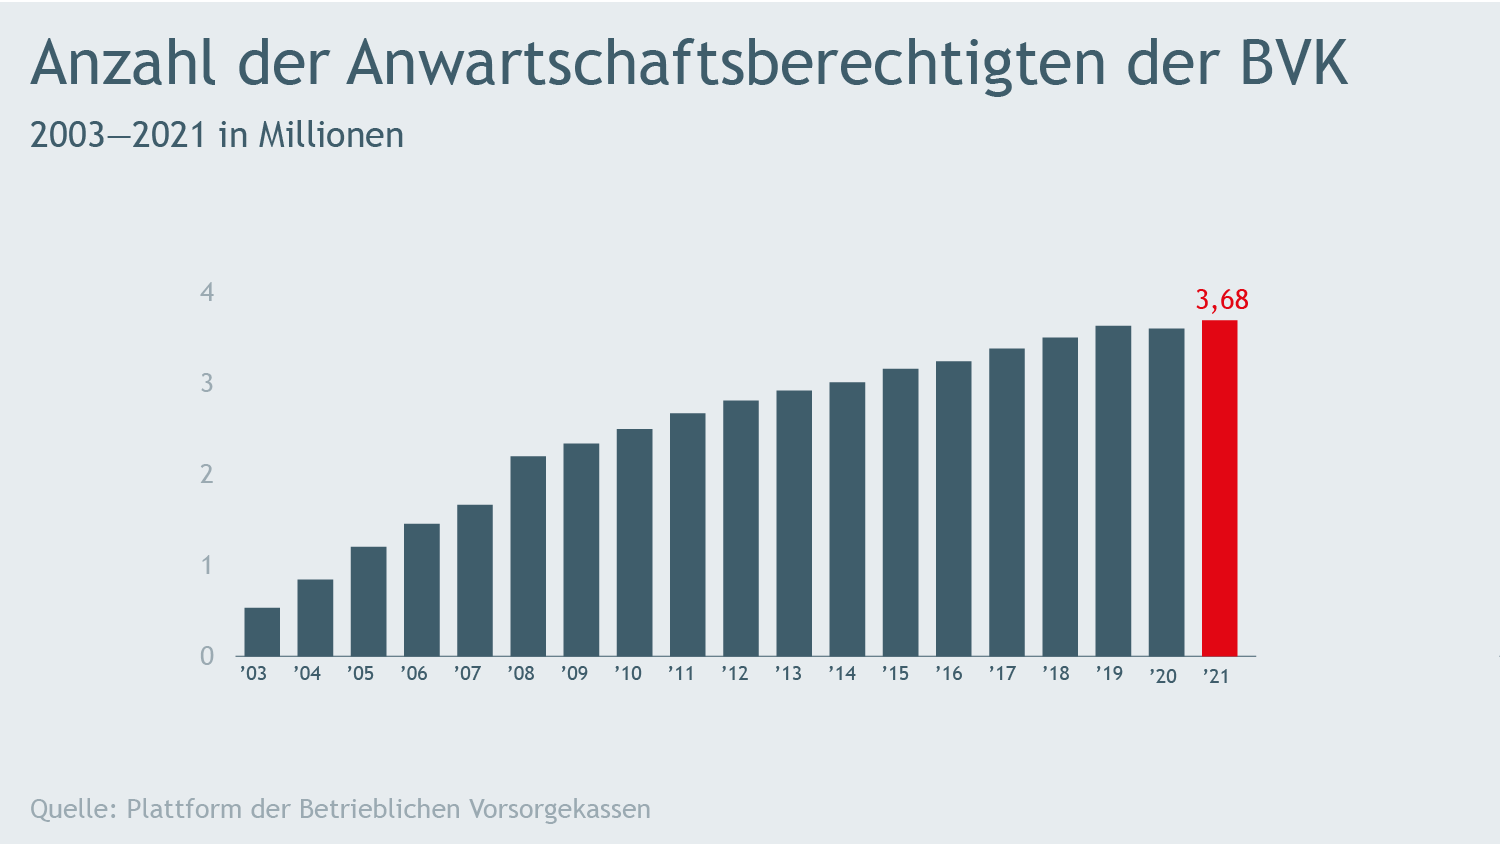 Verlaufsdiagramm zur Entwicklung der Anzahl der Anwartschaften der betrieblichen Vorsorgekassen von 2003 bis 2021